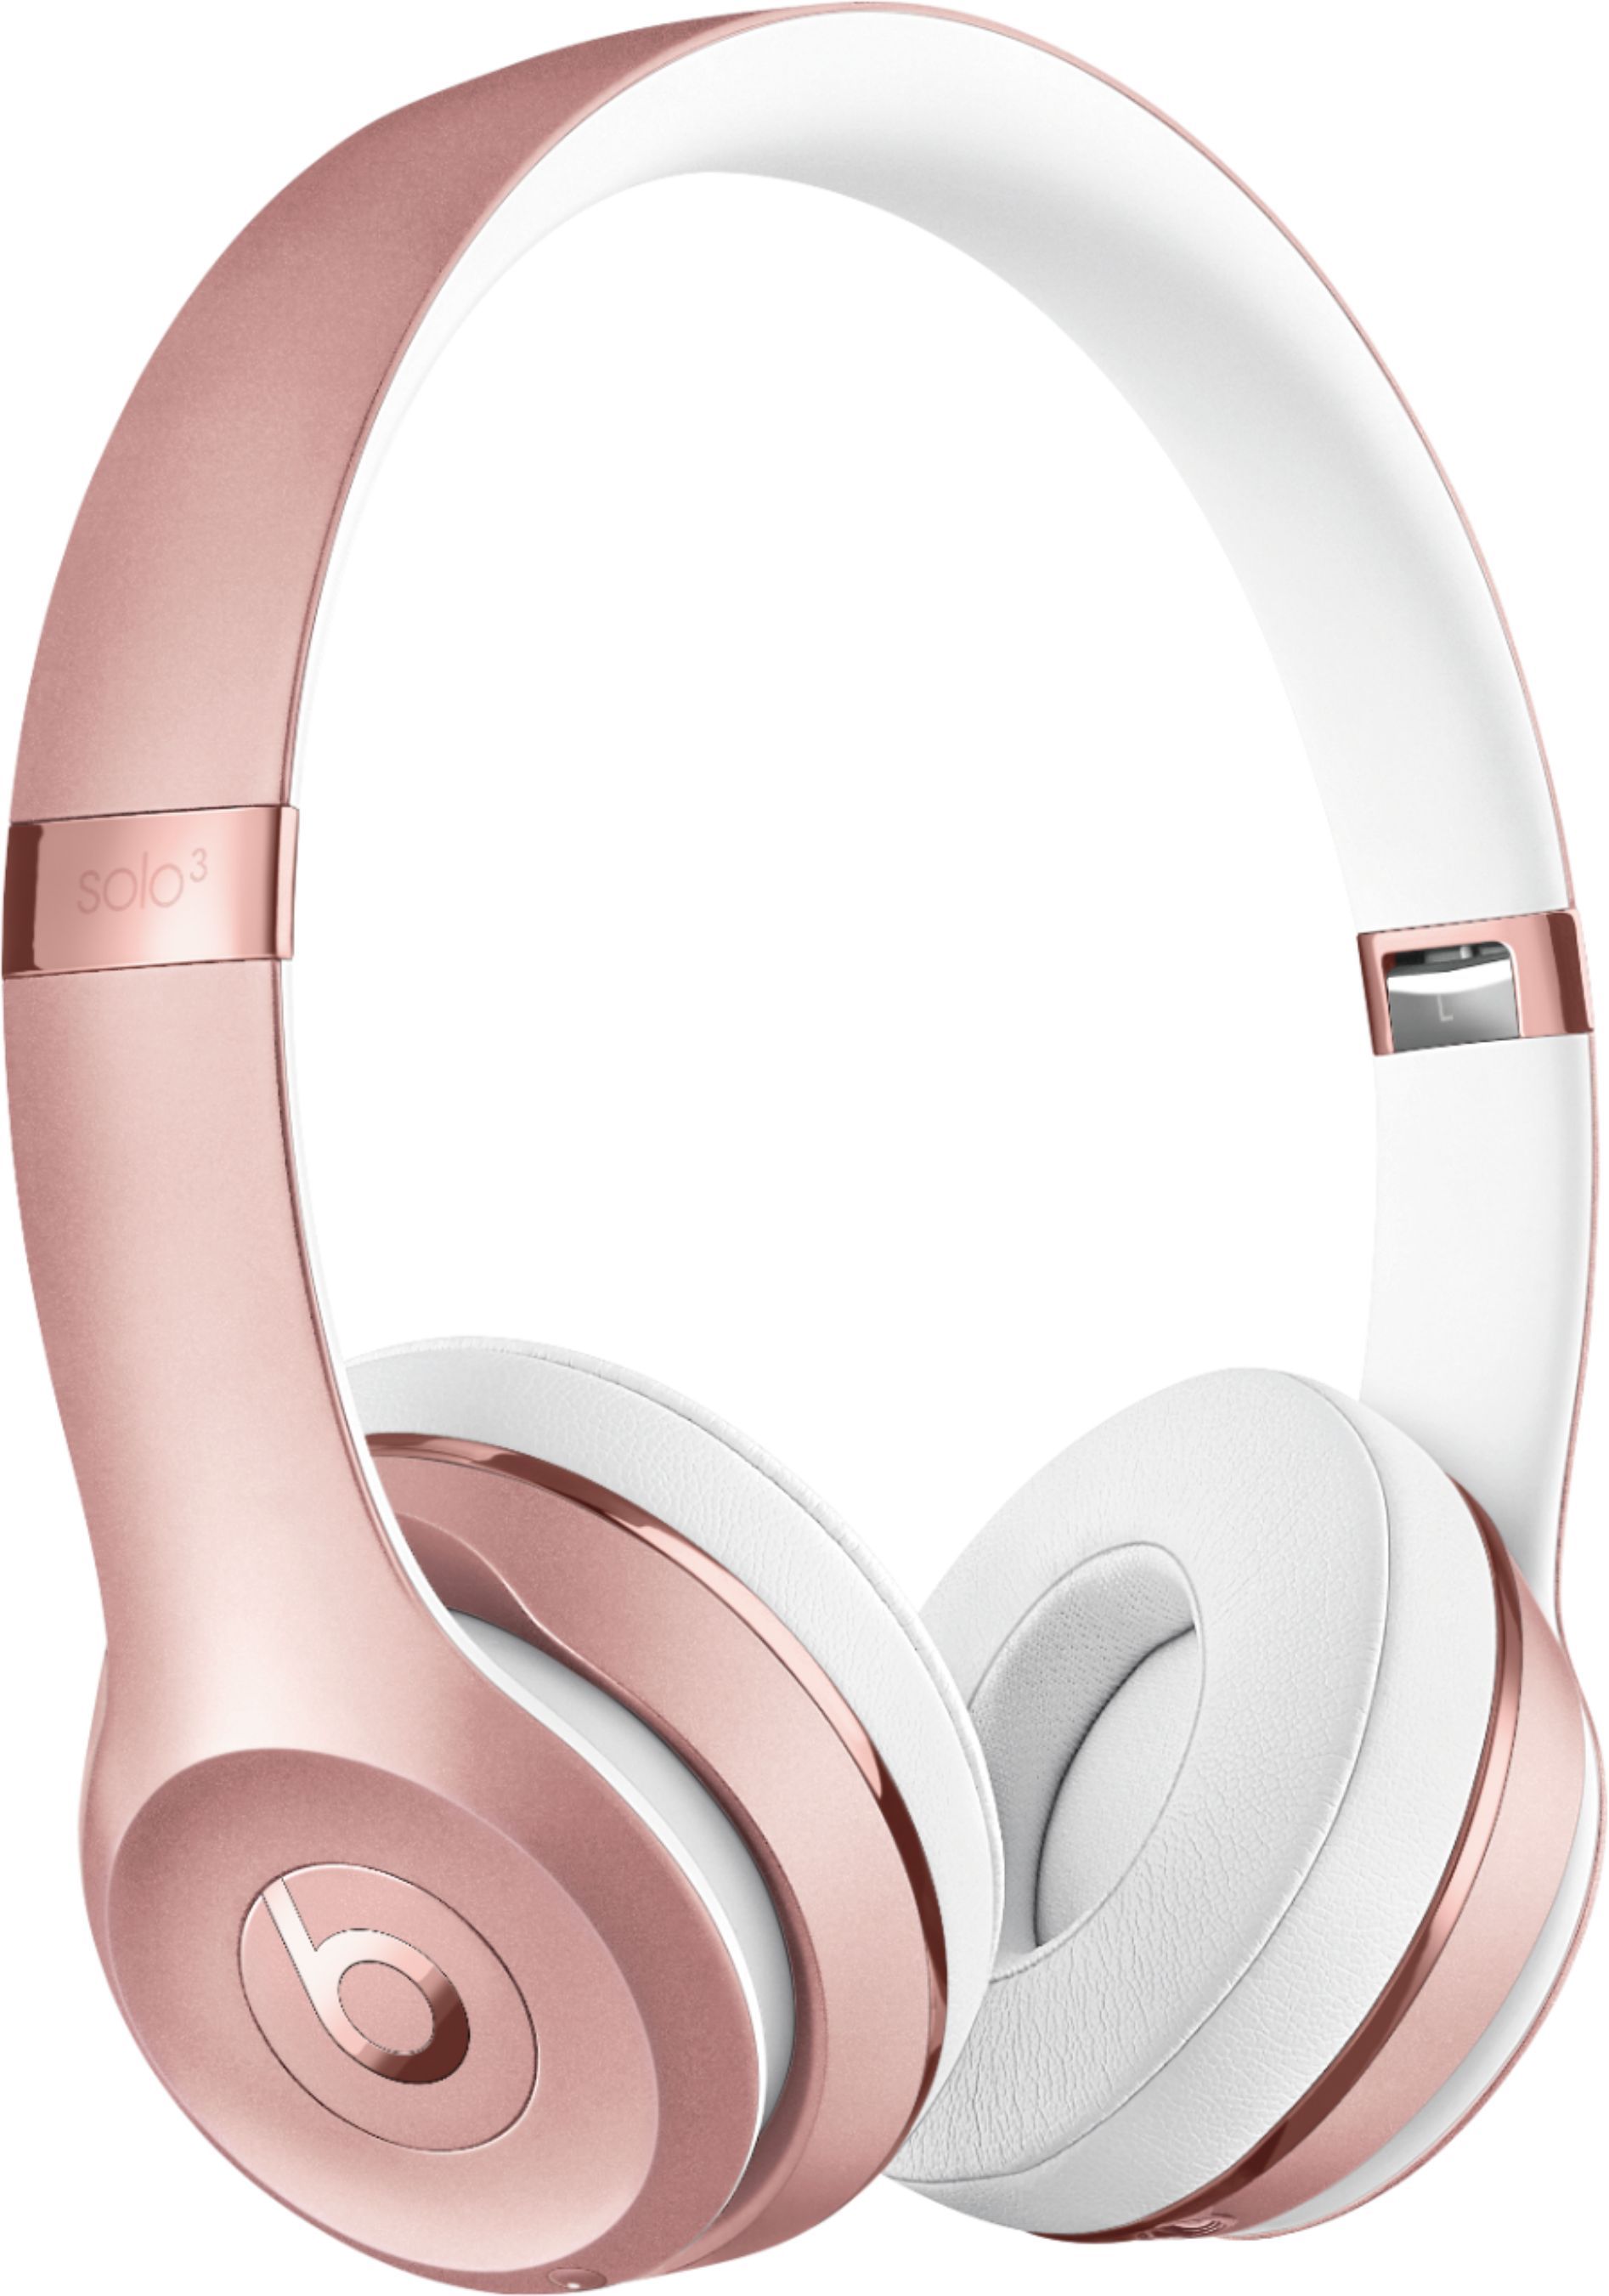 Beats Solo³ Wireless On-Ear Headphones Rose Gold MX442LL/A - Best Buy | Best Buy U.S.